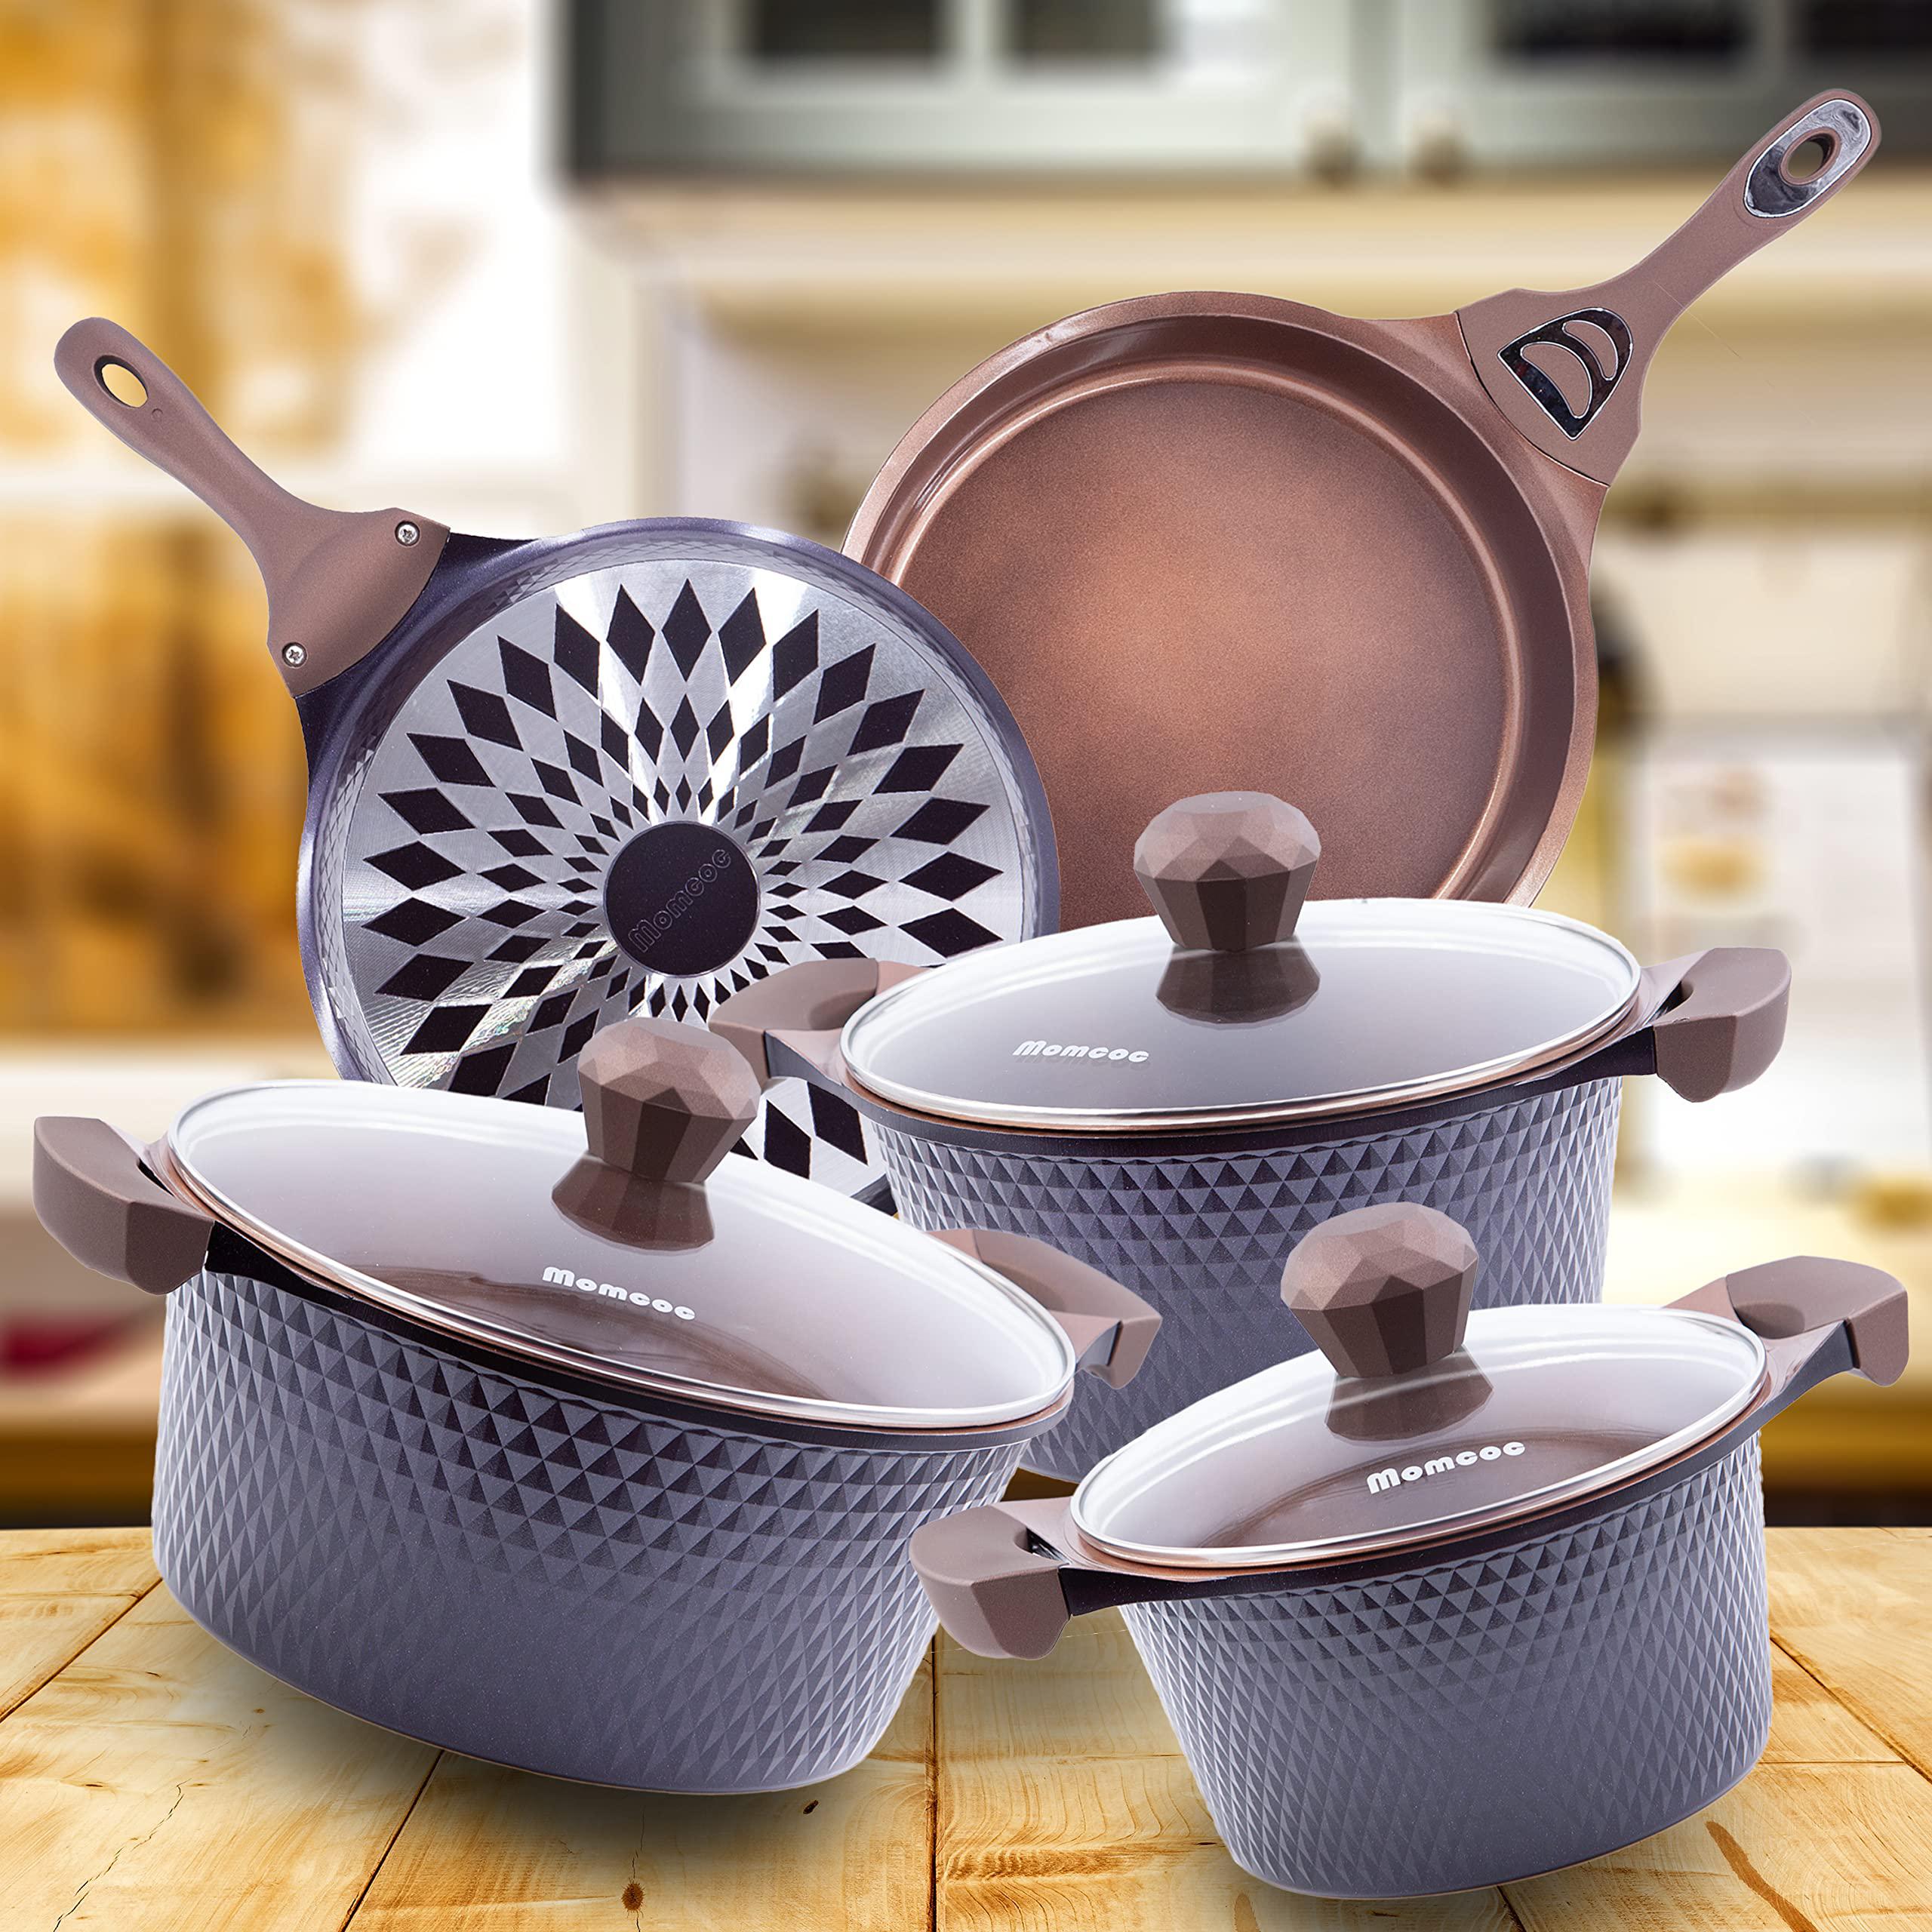 EMB ceramic diamond pots and pans sets- 8 piece nonstick kitchen cookware  alum cast, 3, 6, 10 quart pot & 11 in pan - purple bund